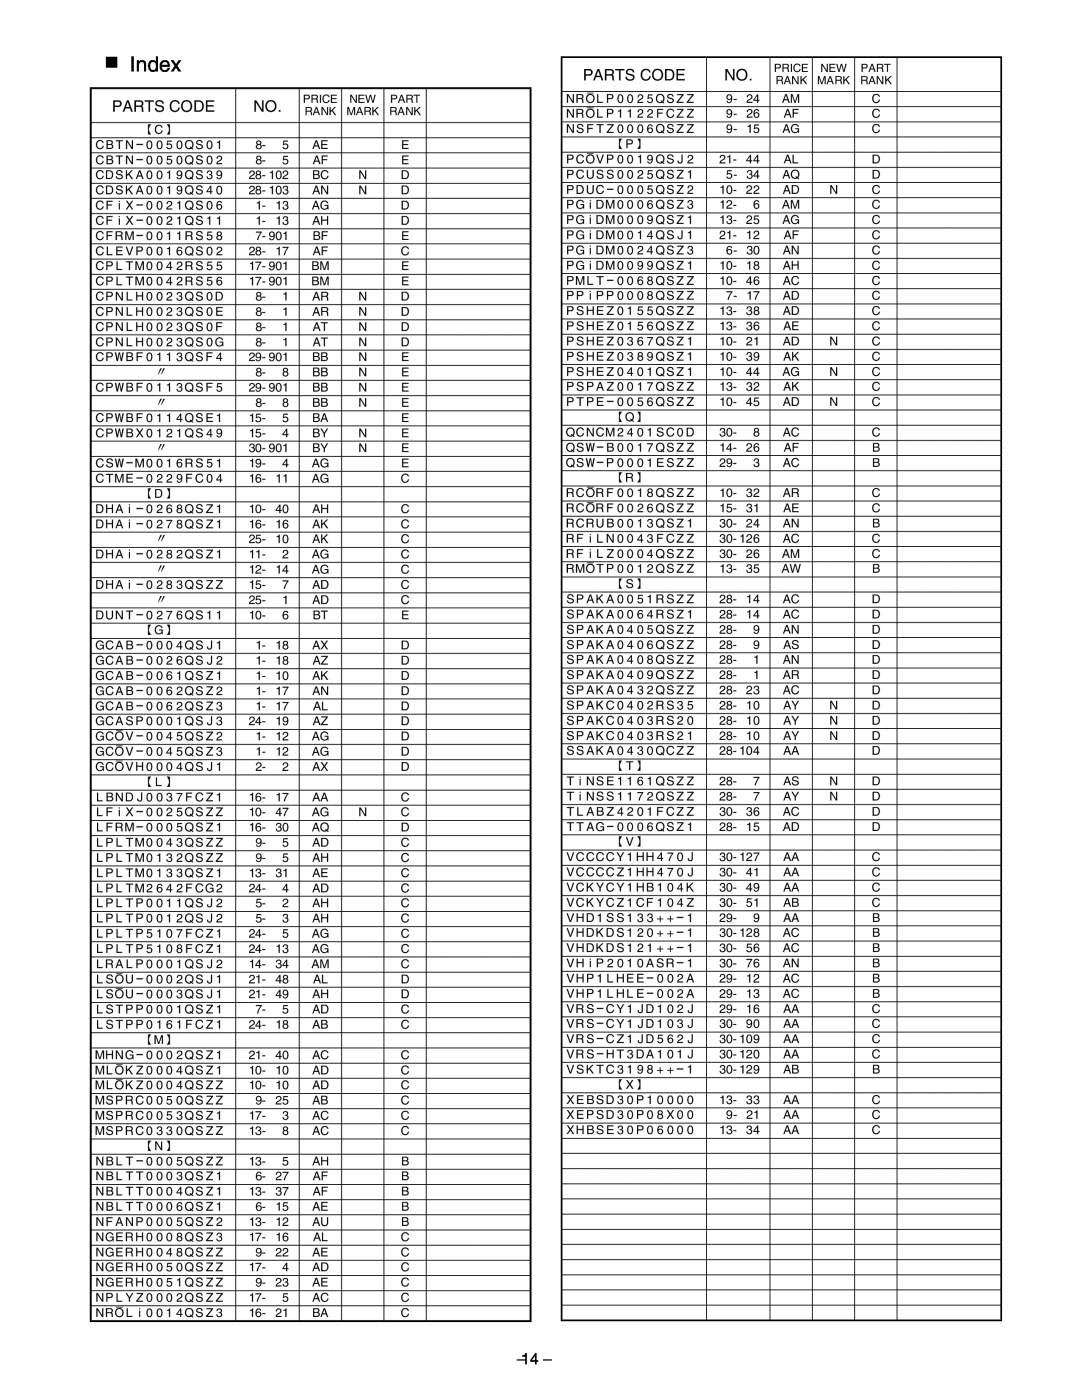 Sharp AL-1641CS, AL-1645CS service manual Index 